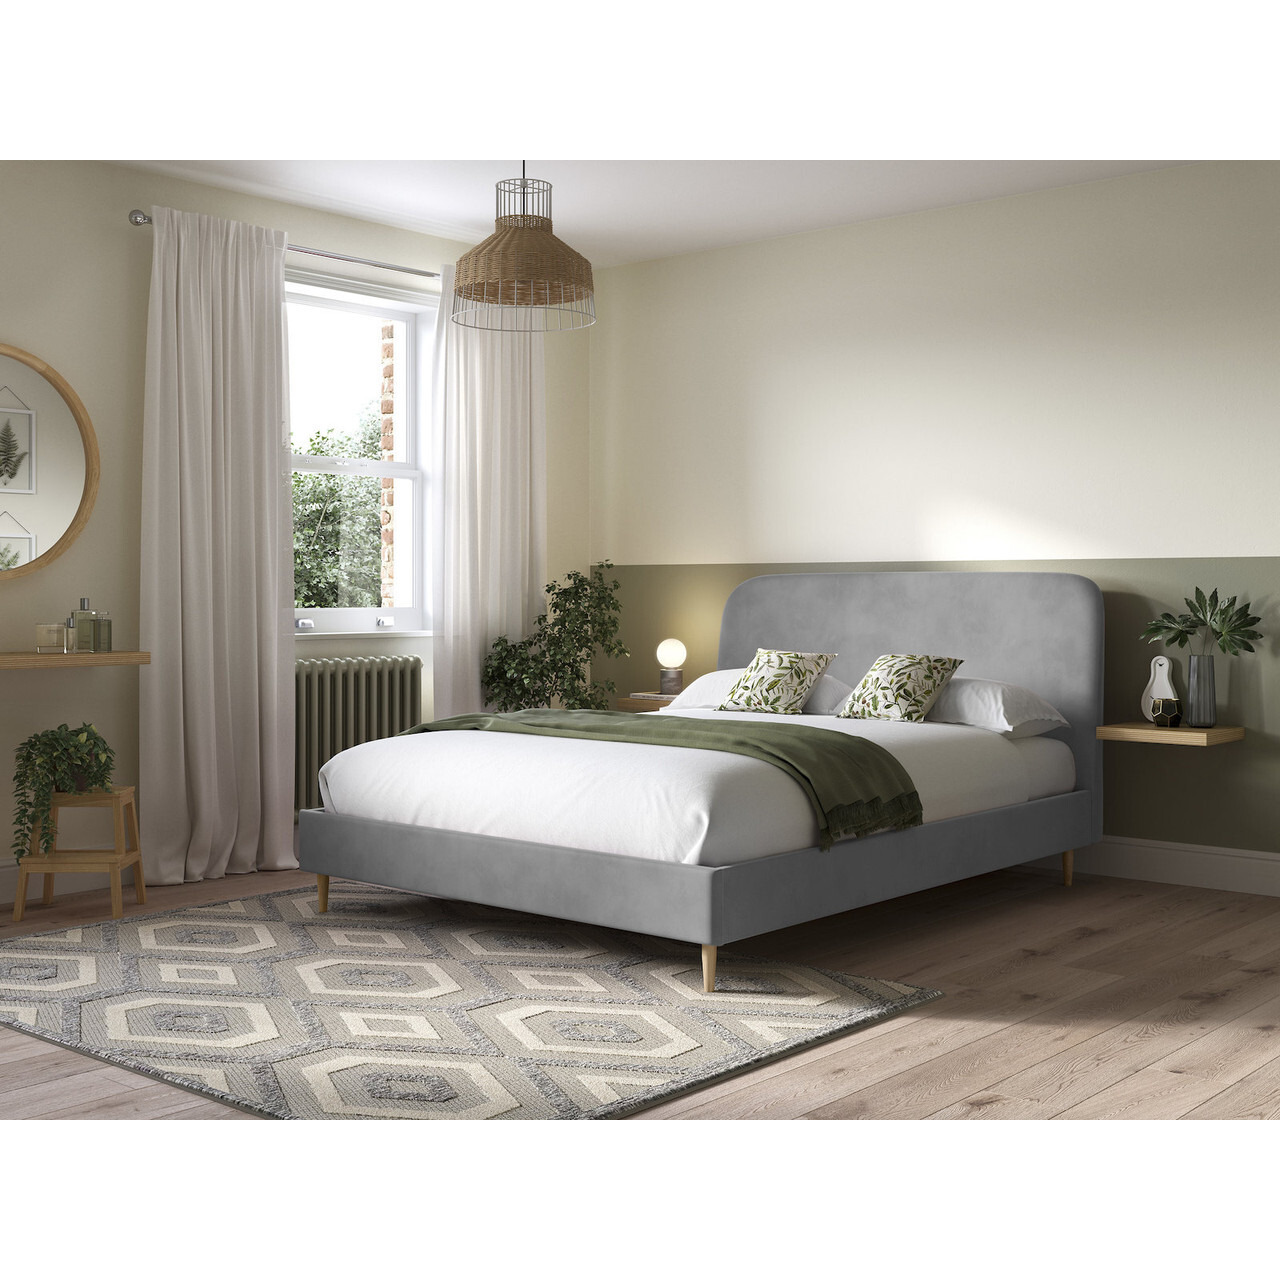 Kora Upholstered Bed Frame - image 1